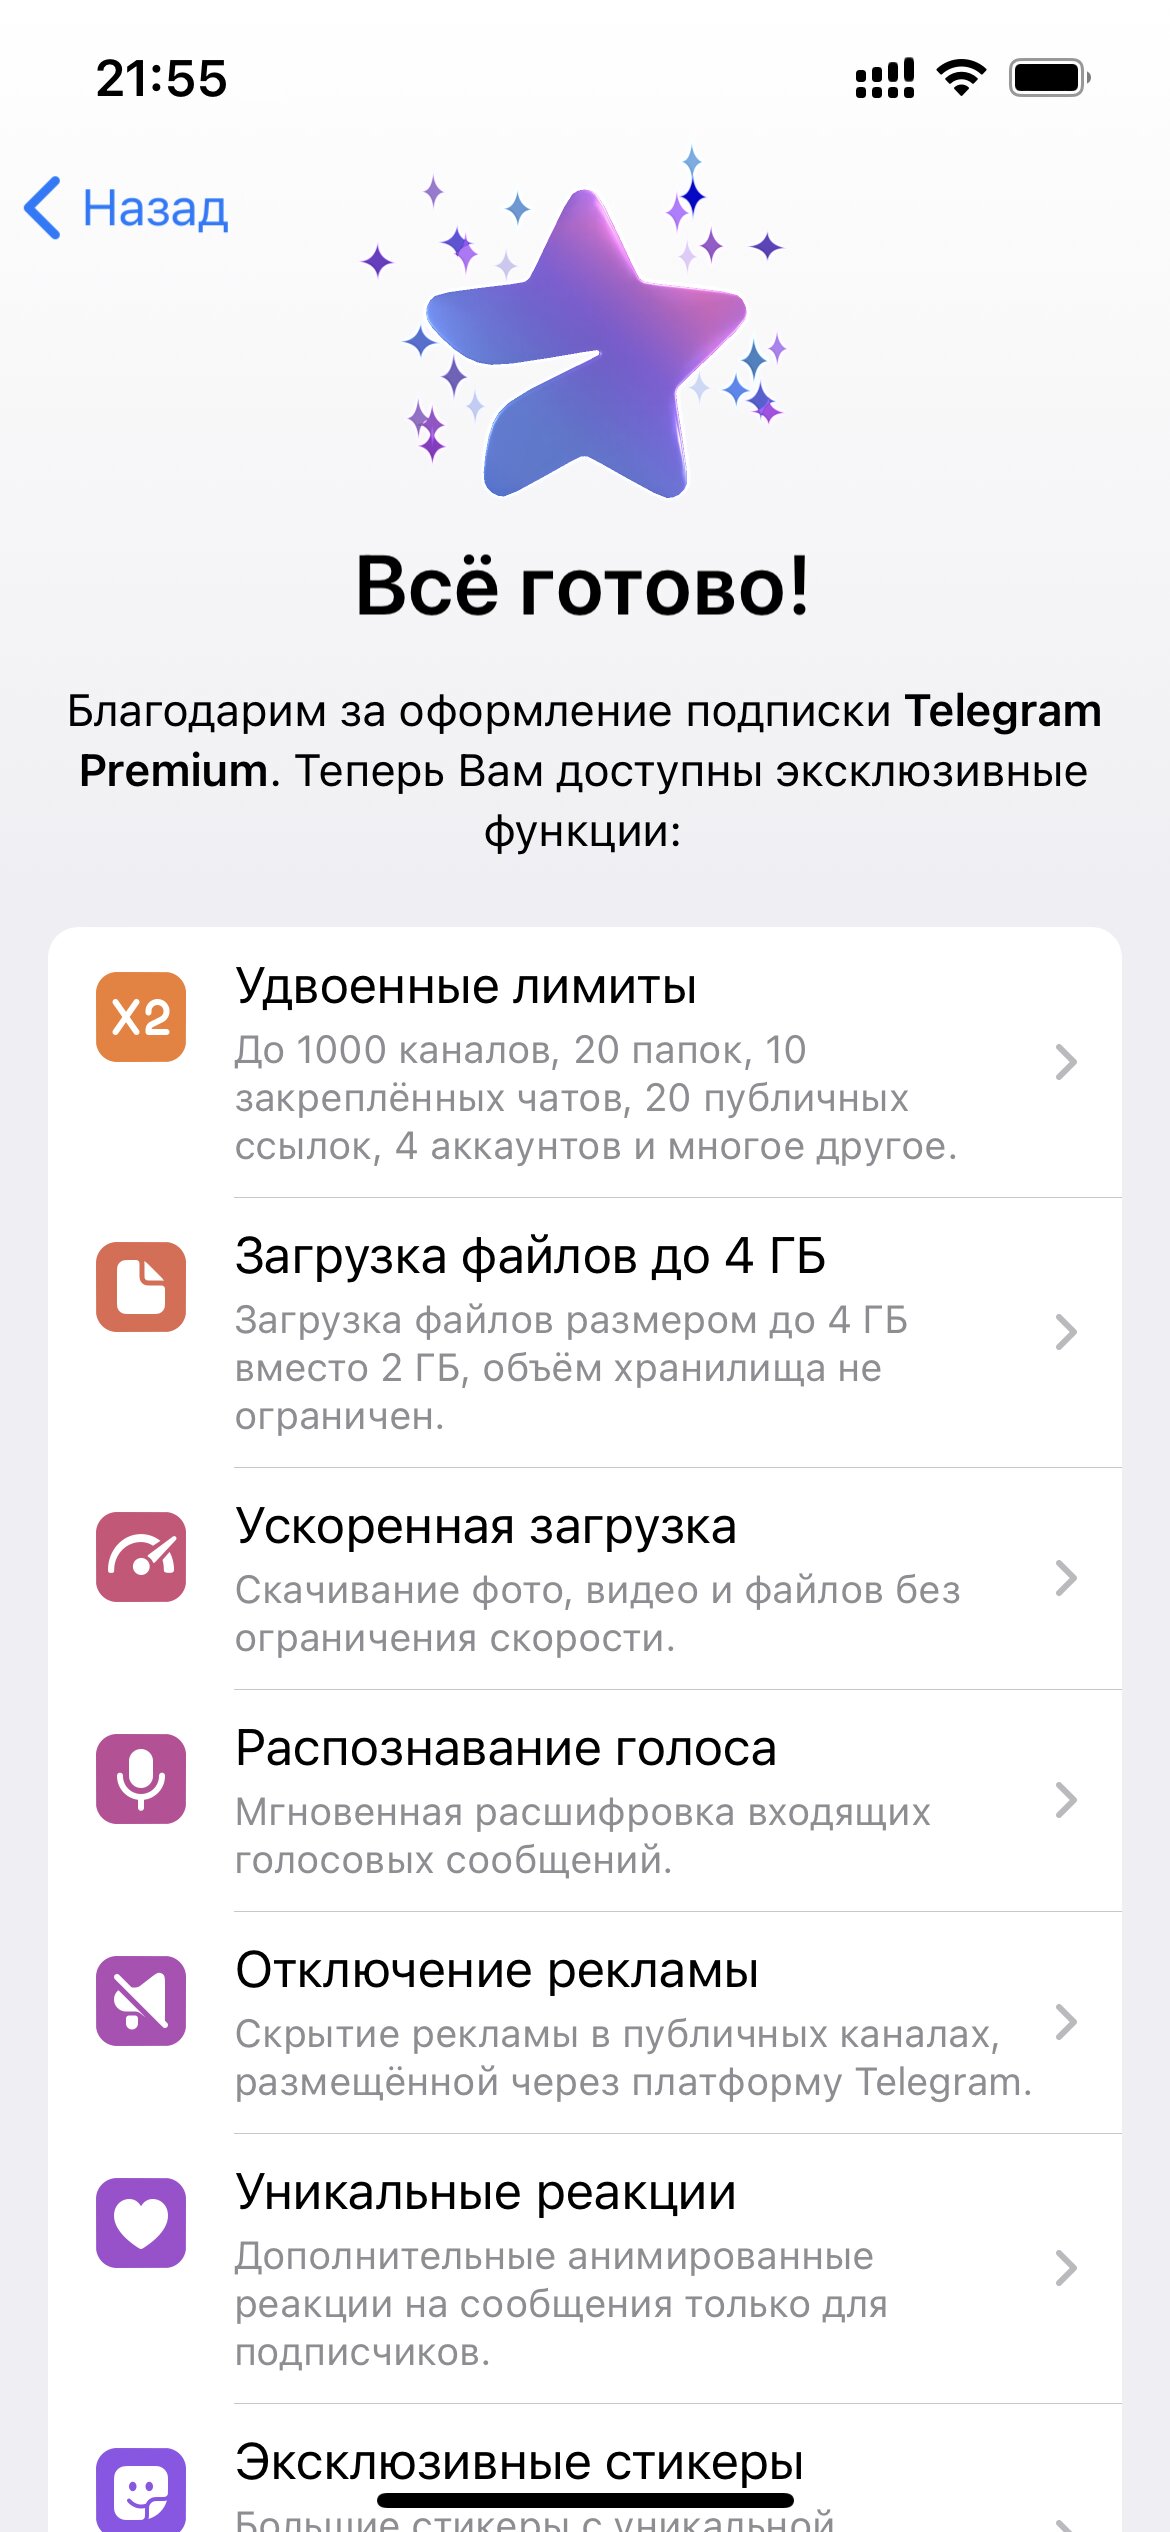 Скачать телеграмм премиум бесплатно на андроид на русском последняя версия фото 110